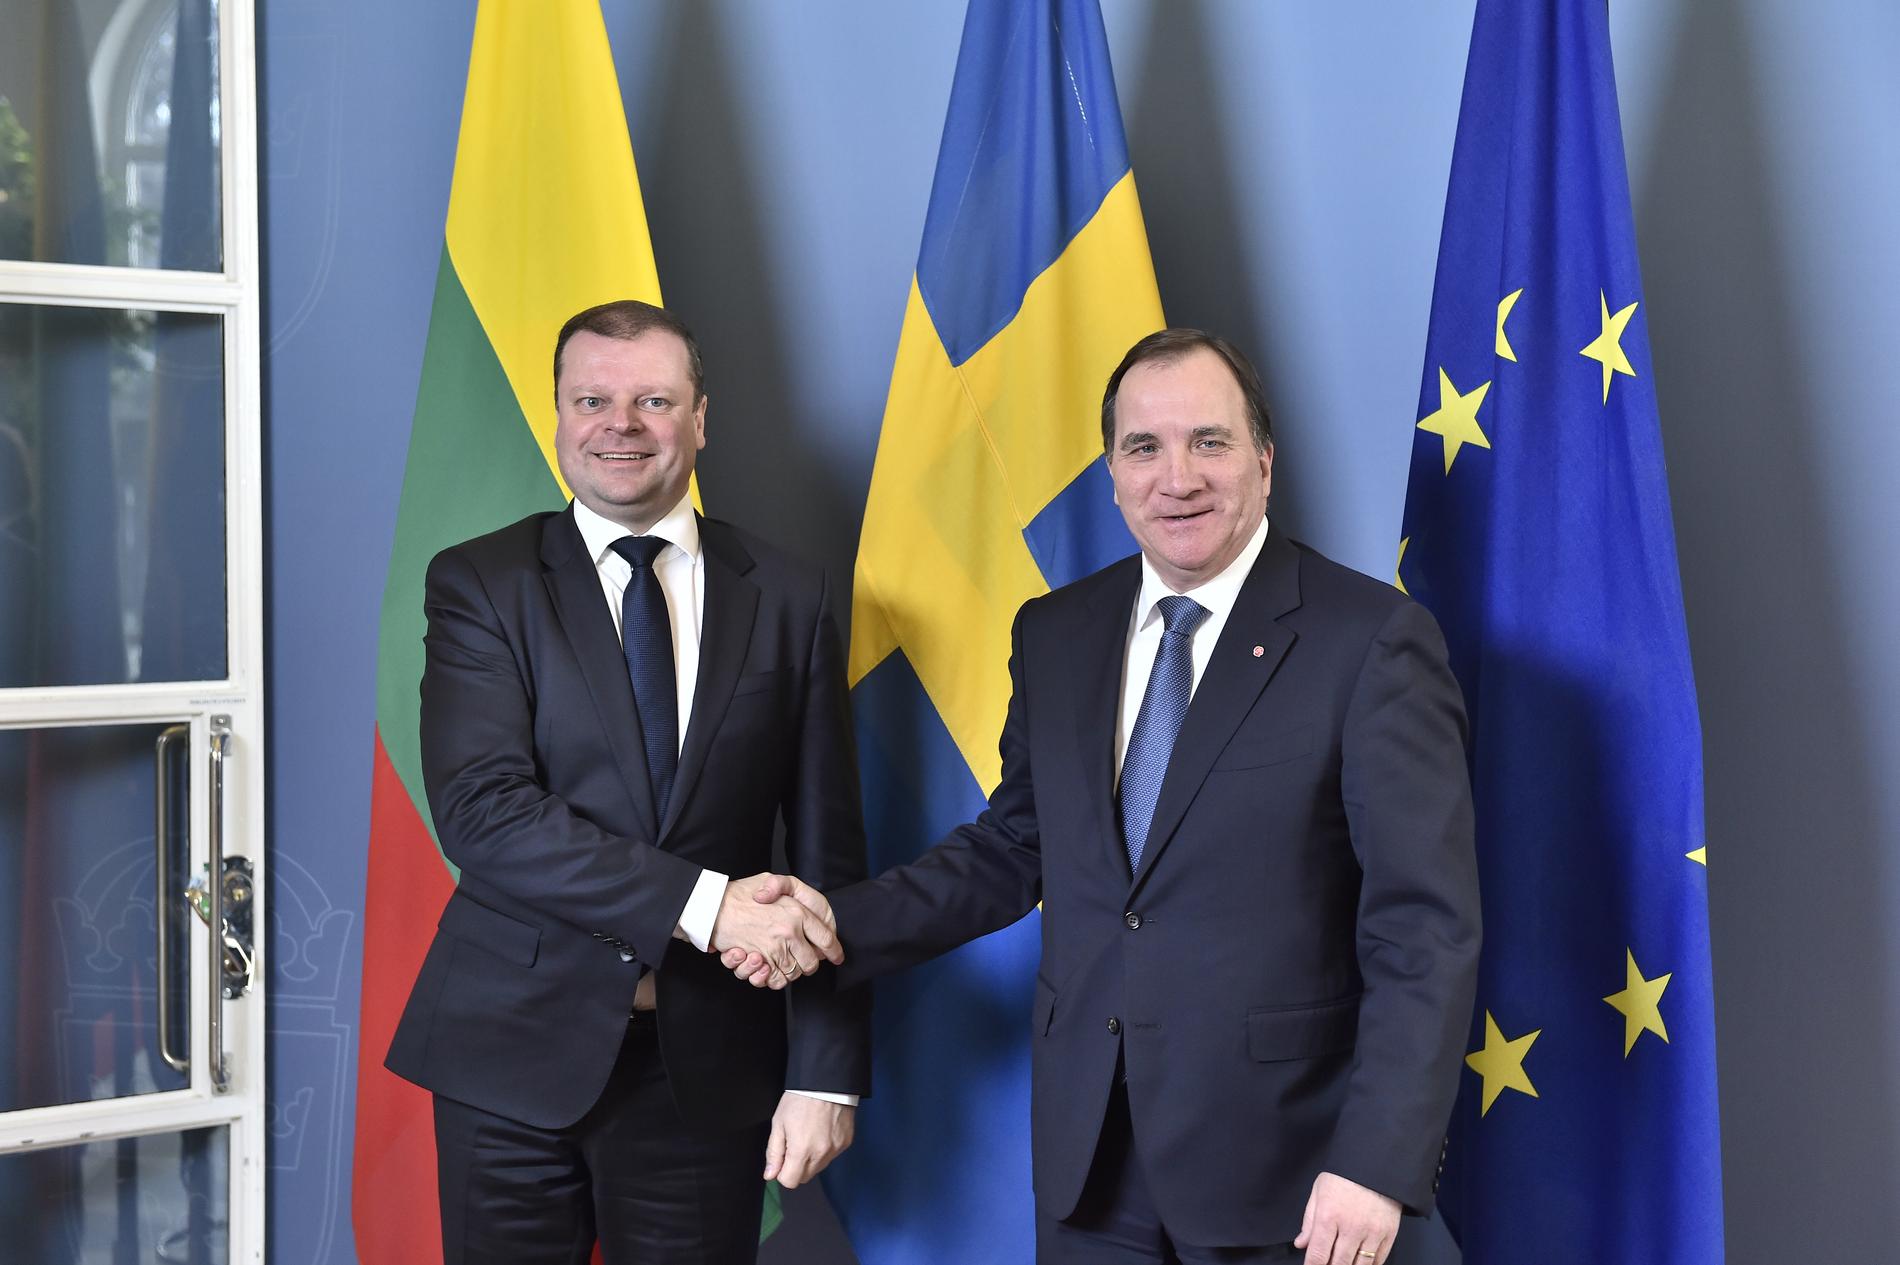 Litauens premiärminister Saulius Skvernelis (till vänster) under ett besök i Sverige 2017, där han träffade statsminister Stefan Löfven (till höger).